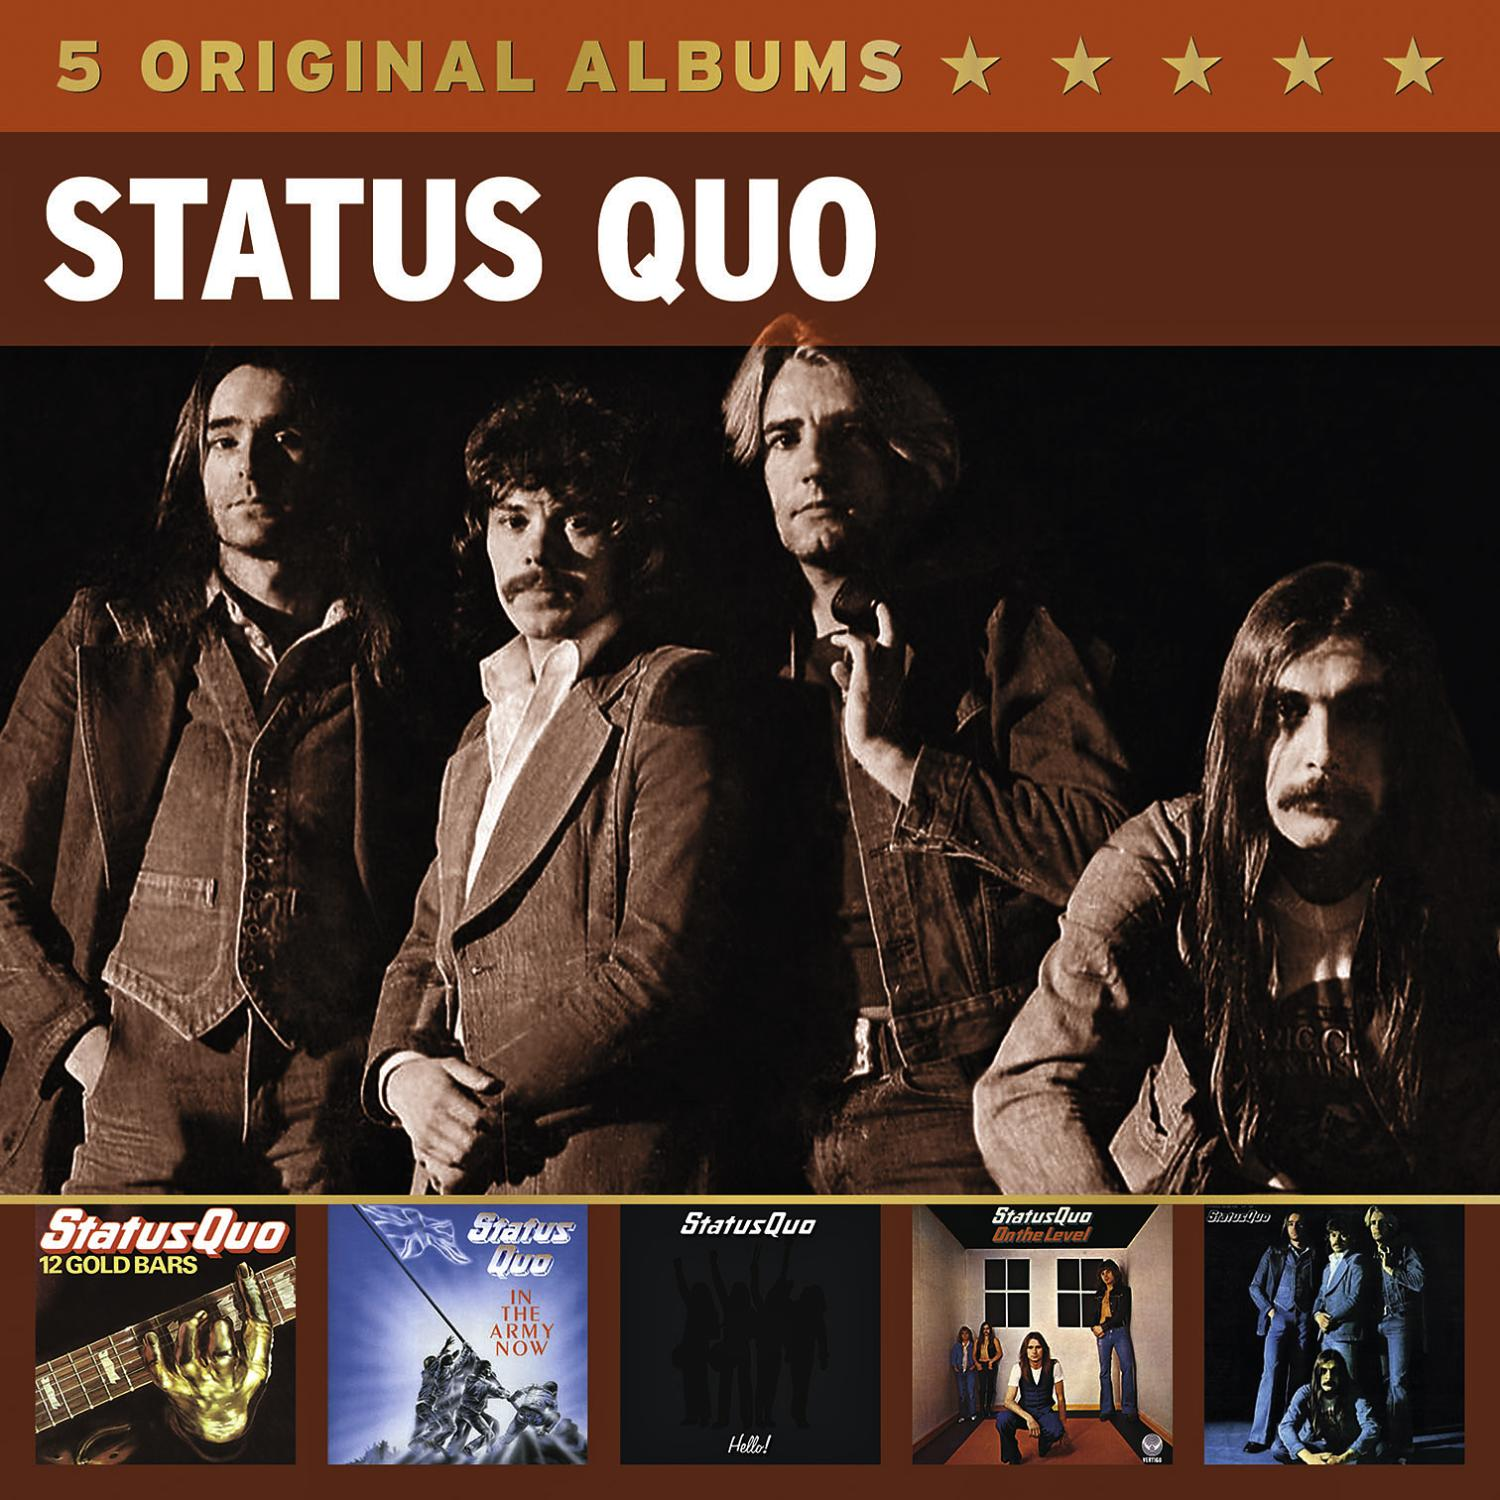 Status Quo - (CD) Albums 5 - Original